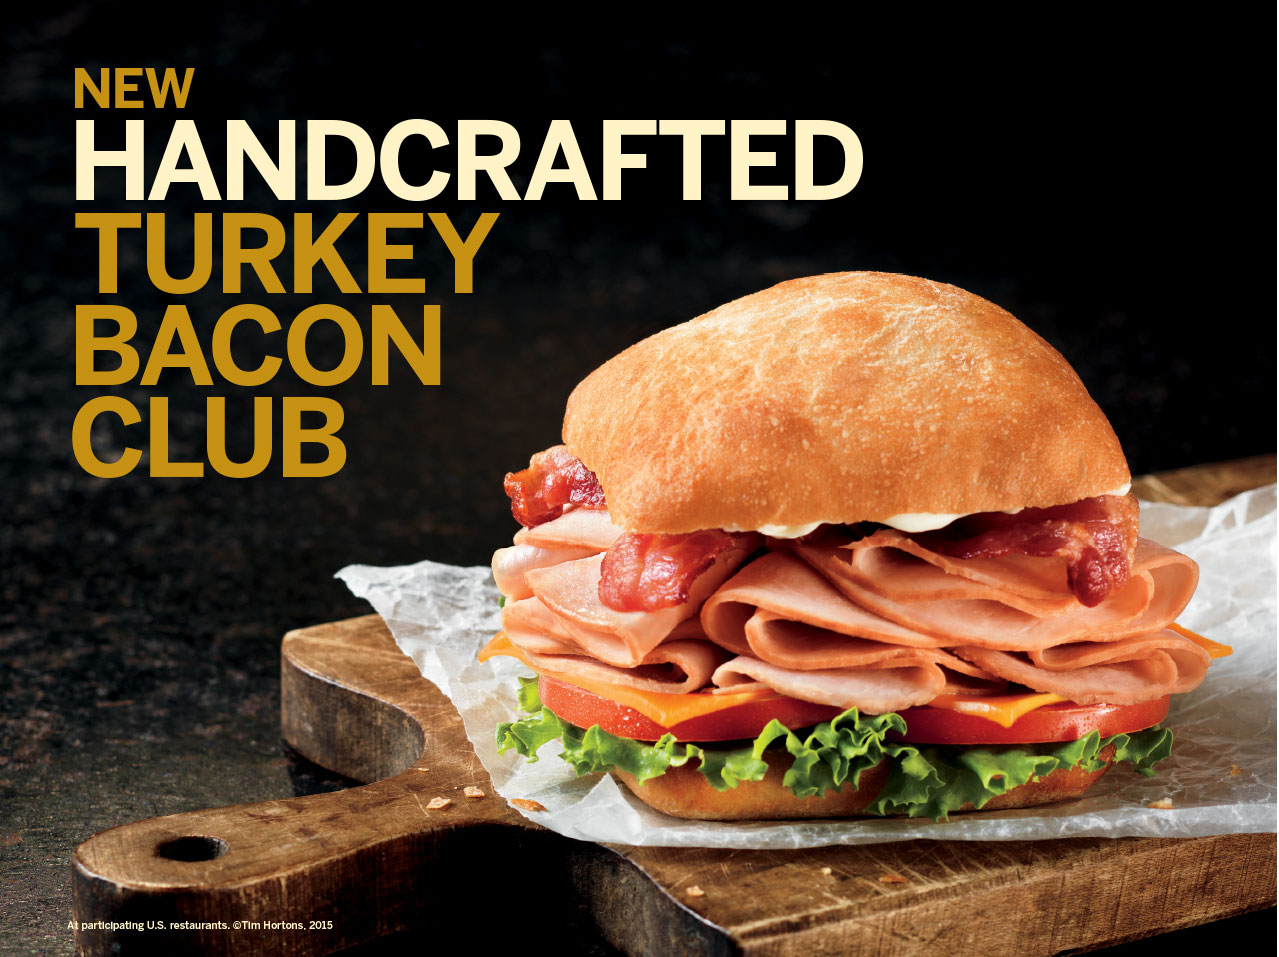 Ad for a turkey club sandwich